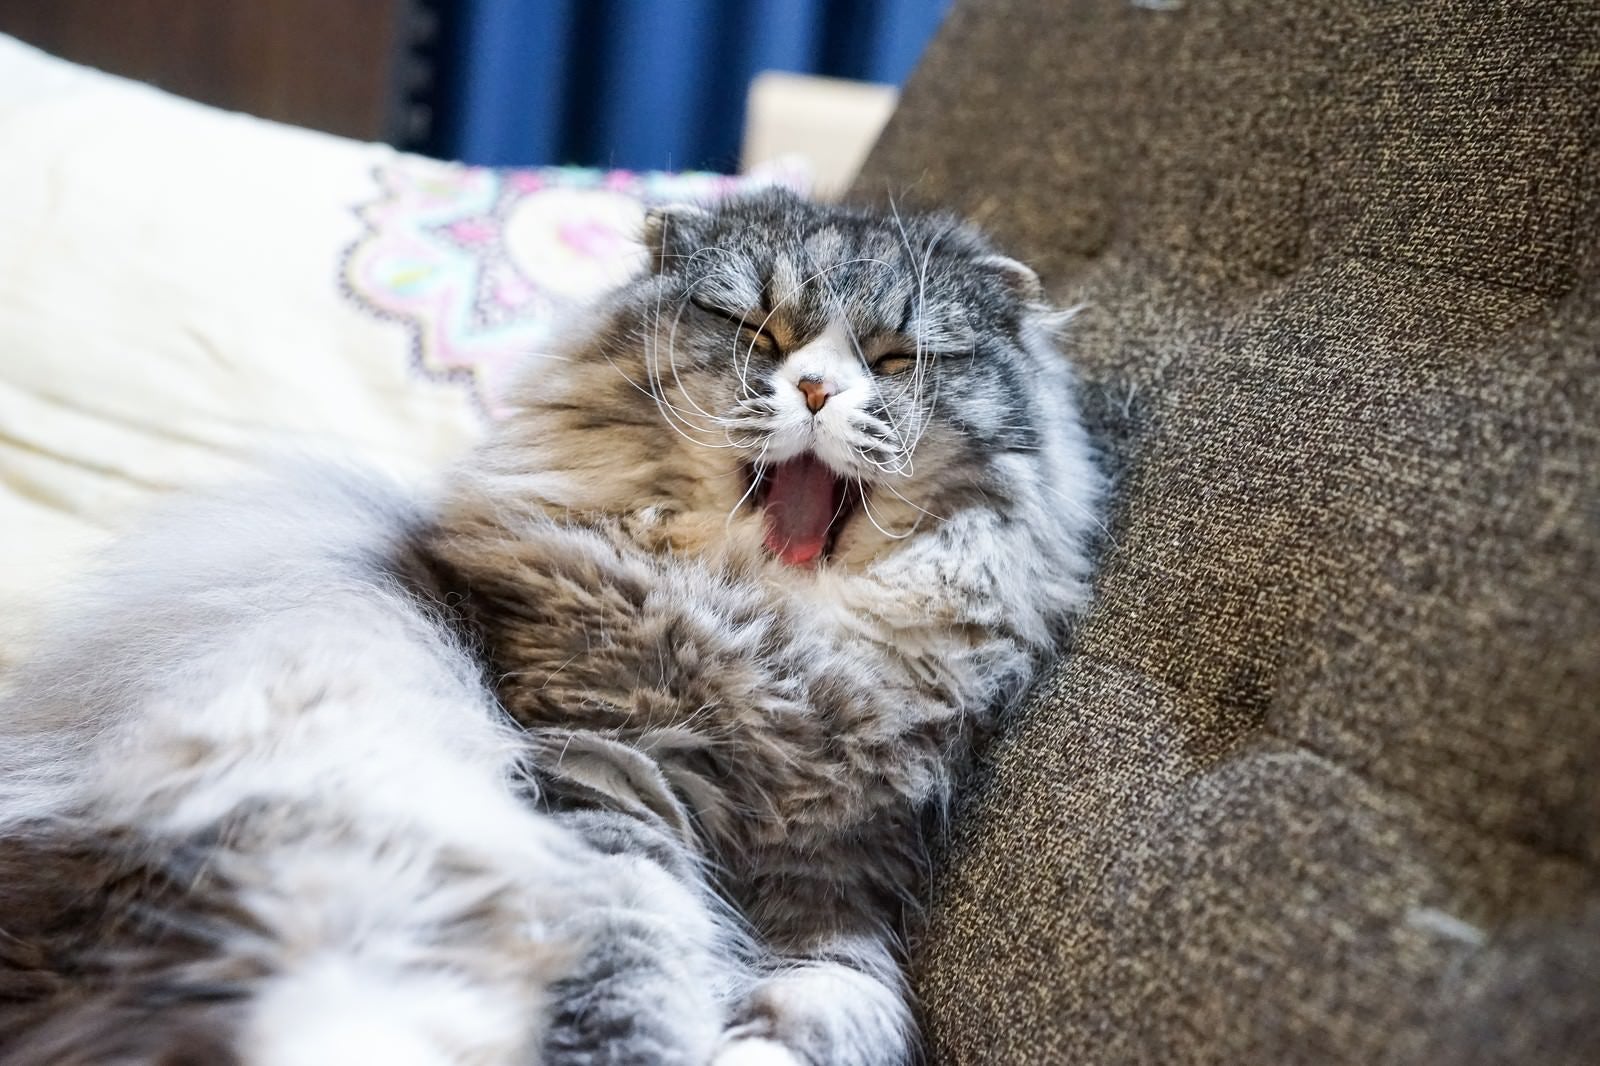 「ソファーであくびをする猫」の写真